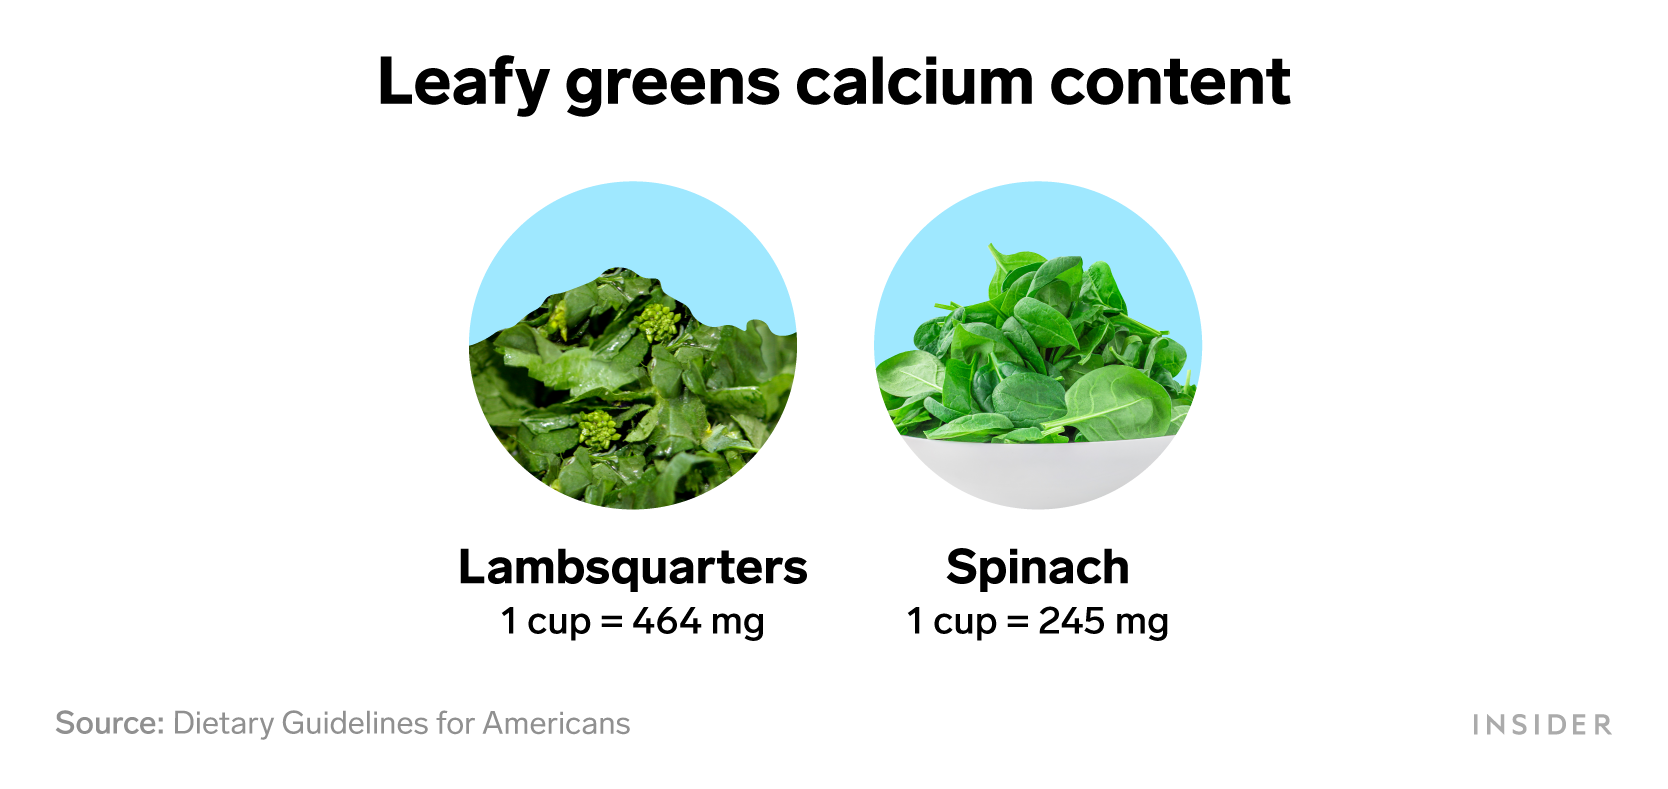 Foods that are rich in calcium: Leafy greens calcium content